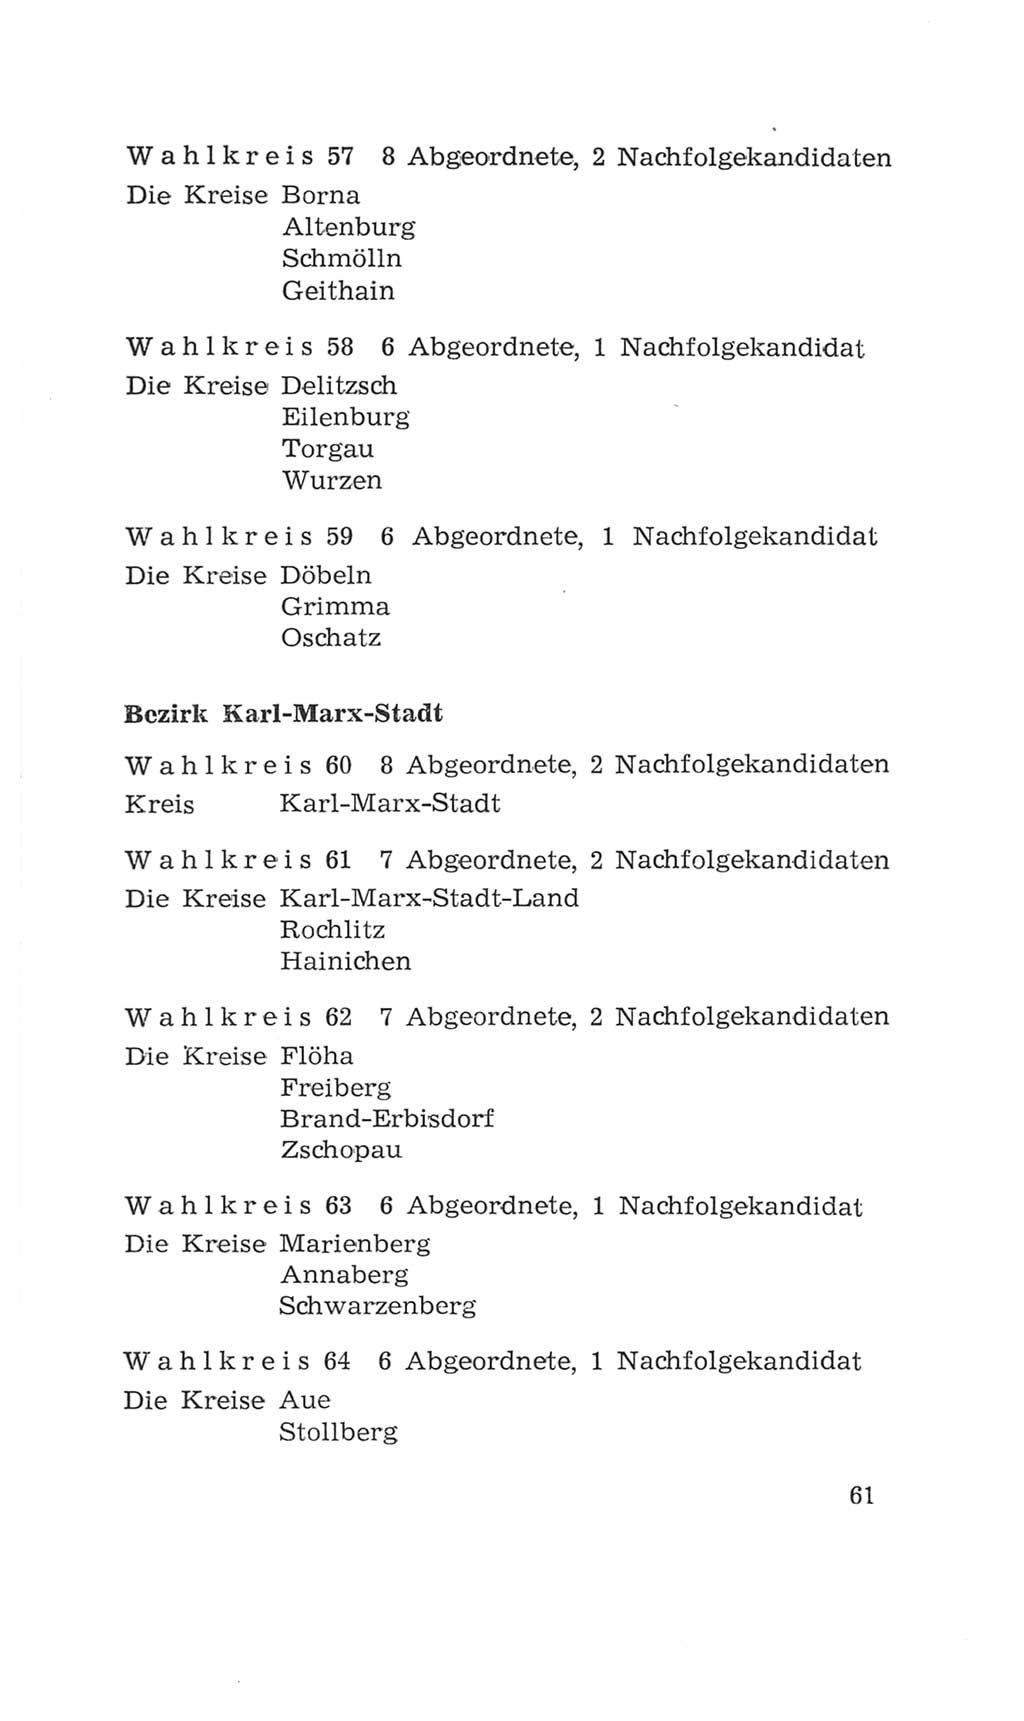 Volkskammer (VK) der Deutschen Demokratischen Republik (DDR), 4. Wahlperiode 1963-1967, Seite 61 (VK. DDR 4. WP. 1963-1967, S. 61)